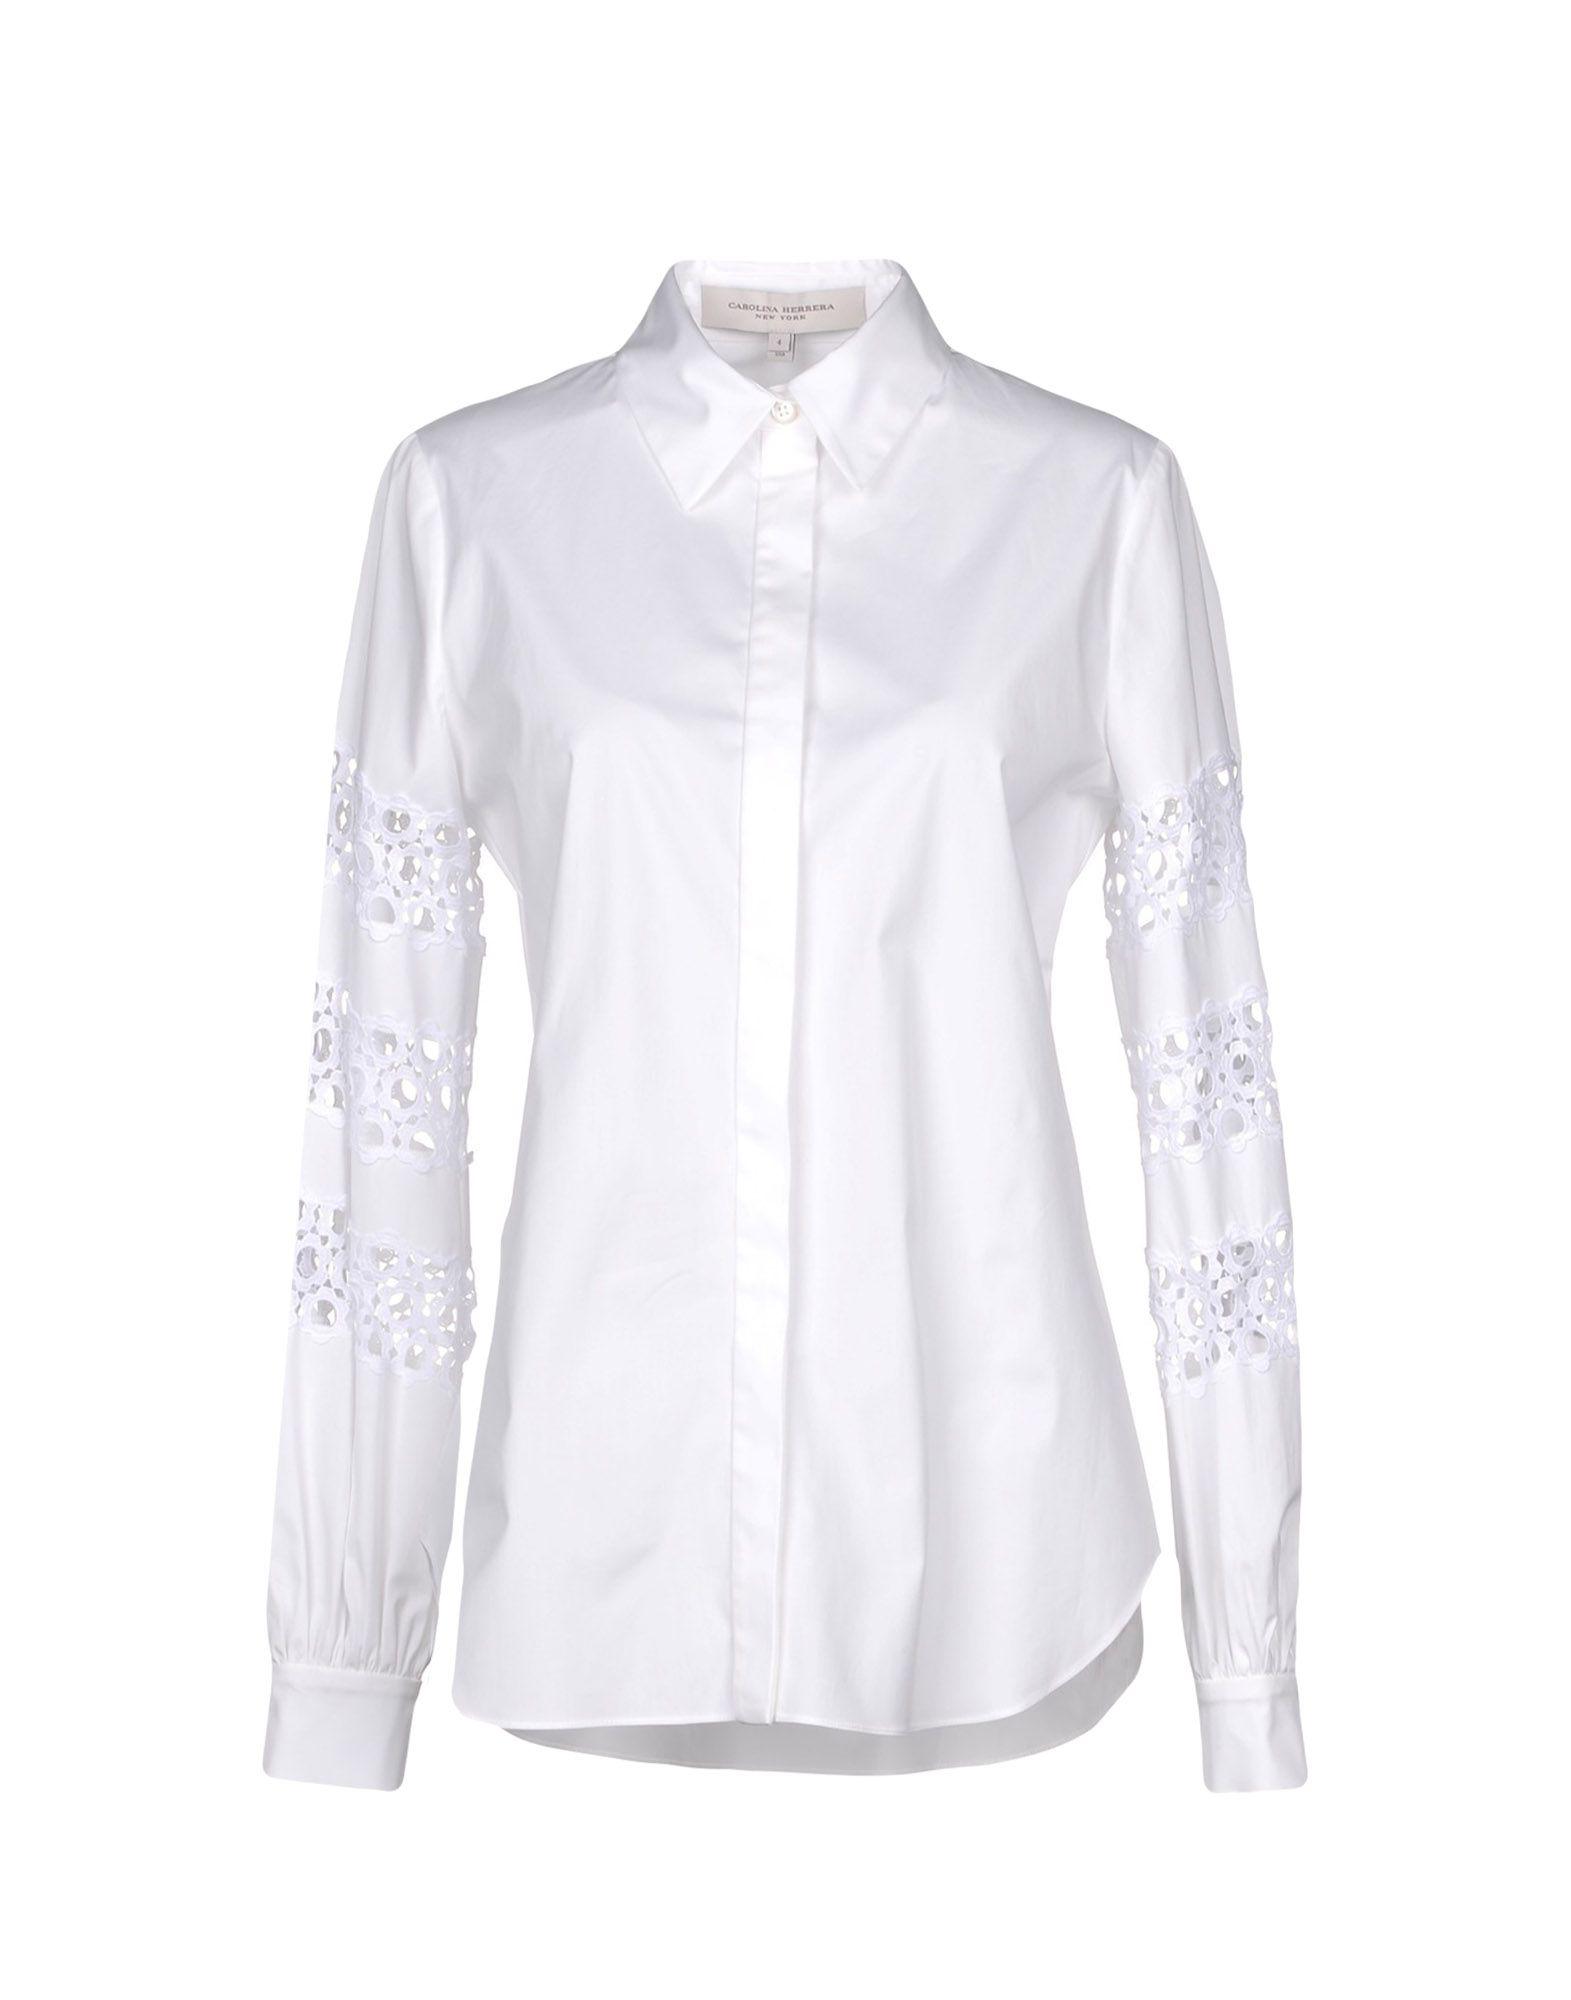 Carolina Herrera Cotton Shirt in White - Lyst